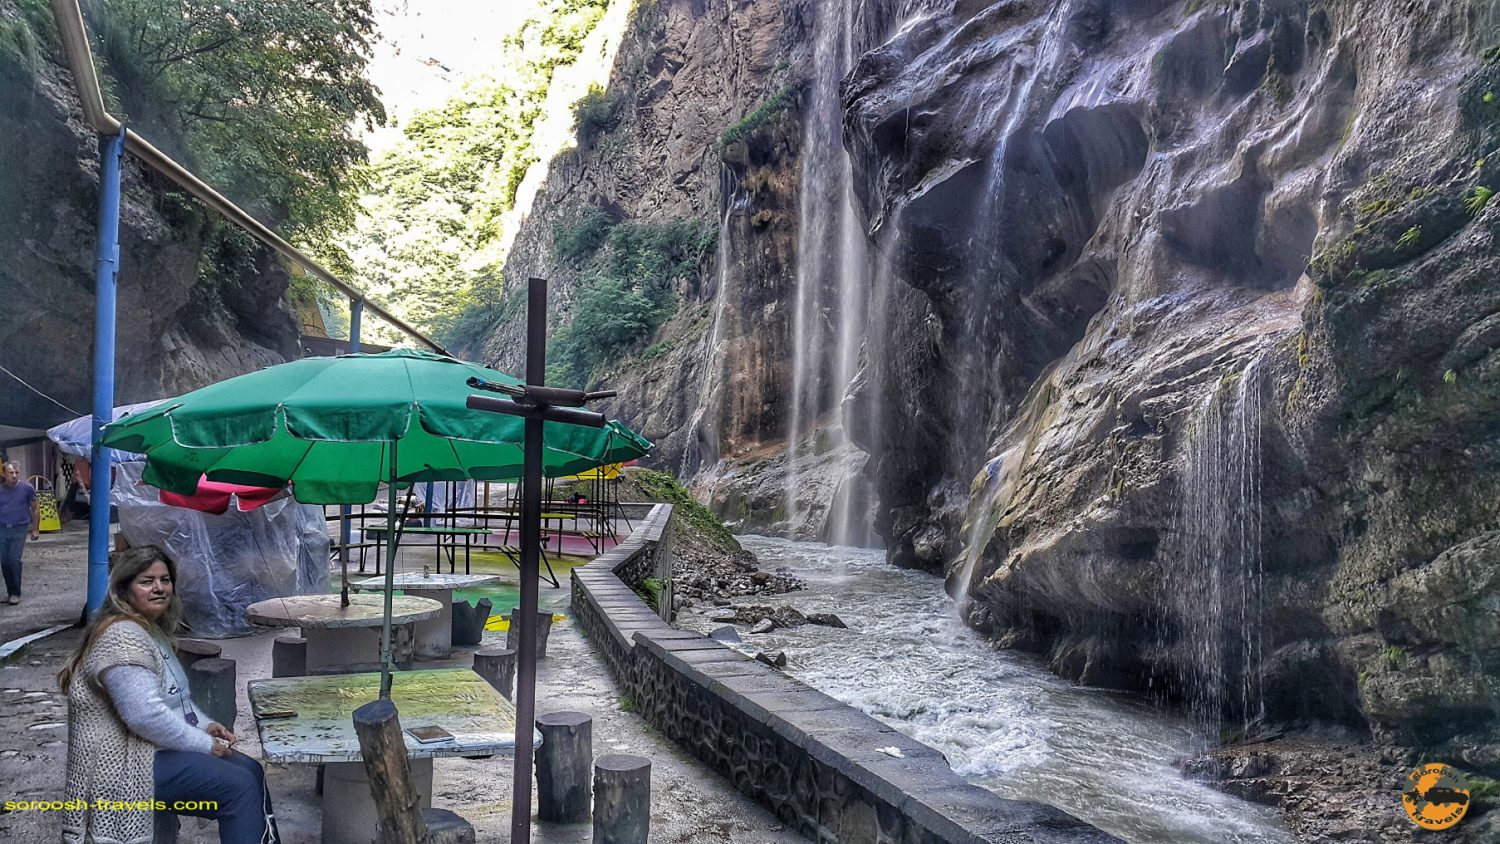 سفرنامه روسیه با اتوموبیل:  آبشار چِگِم در جنوب غربی روسیه – تابستان ۱۳۹۸